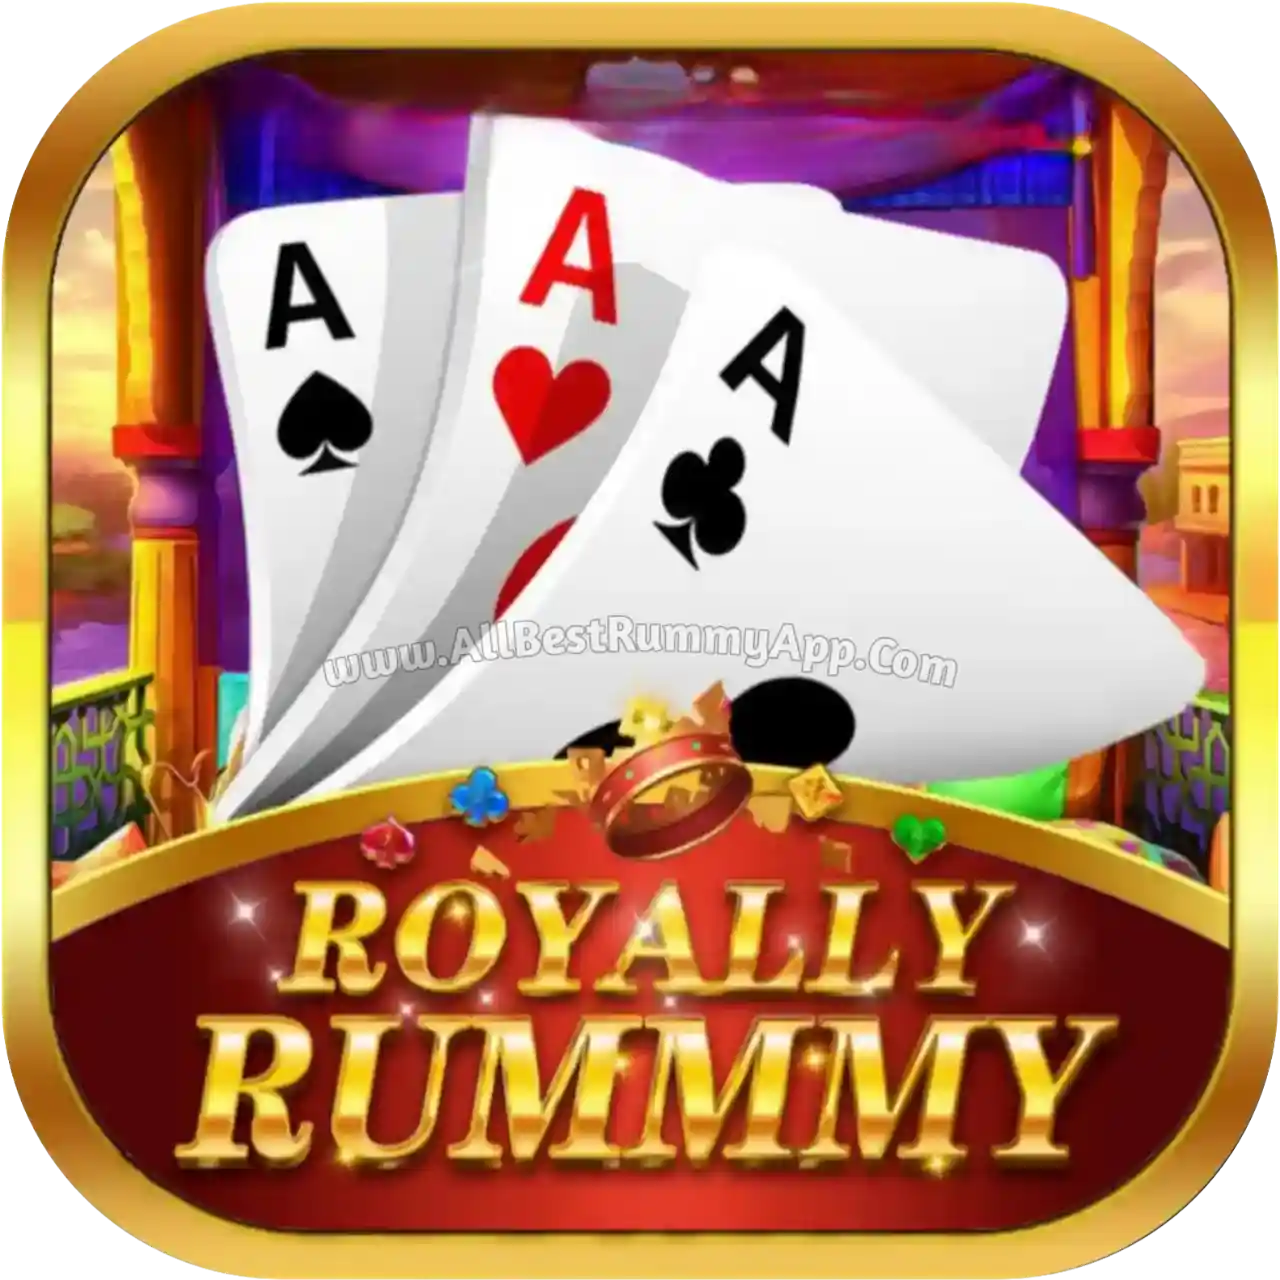 Royally Rummy APK - Top 20 Rummy App List